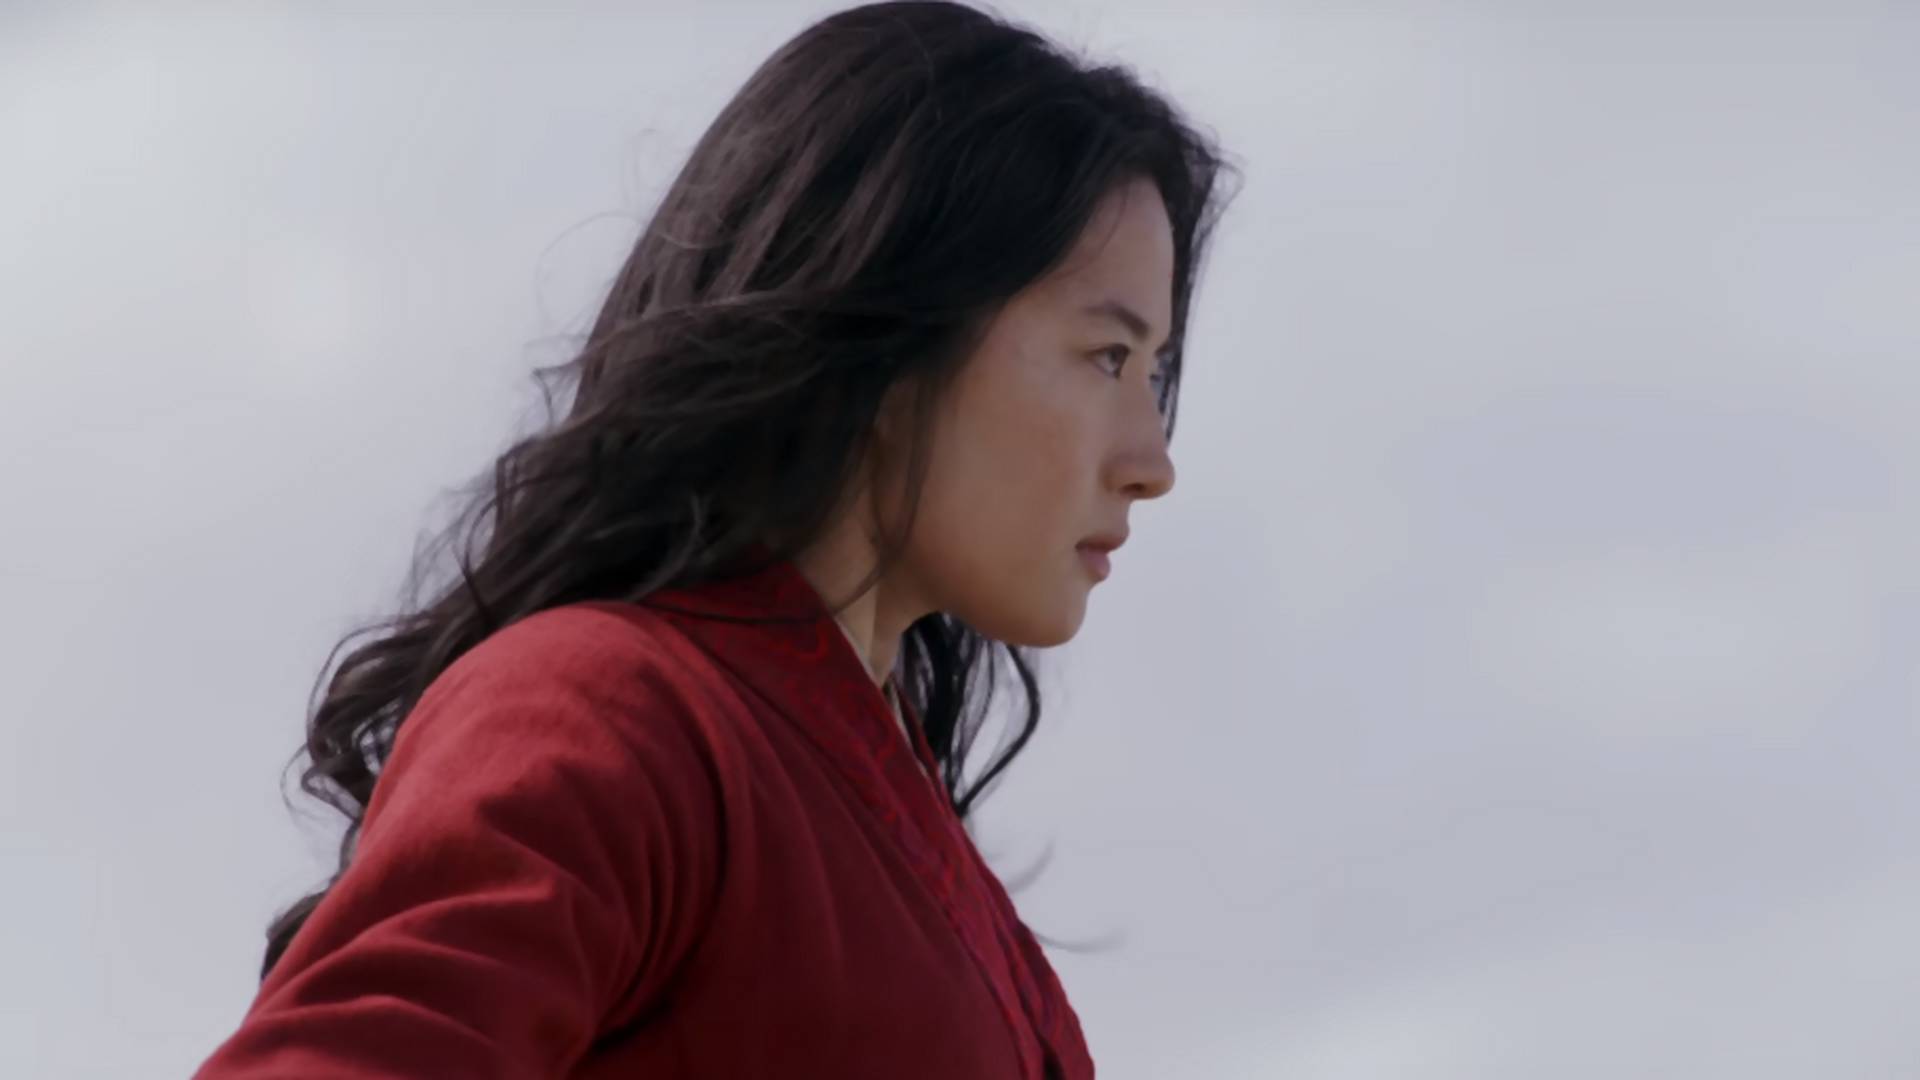 Jest pierwszy trailer aktorskiej wersji "Mulan"